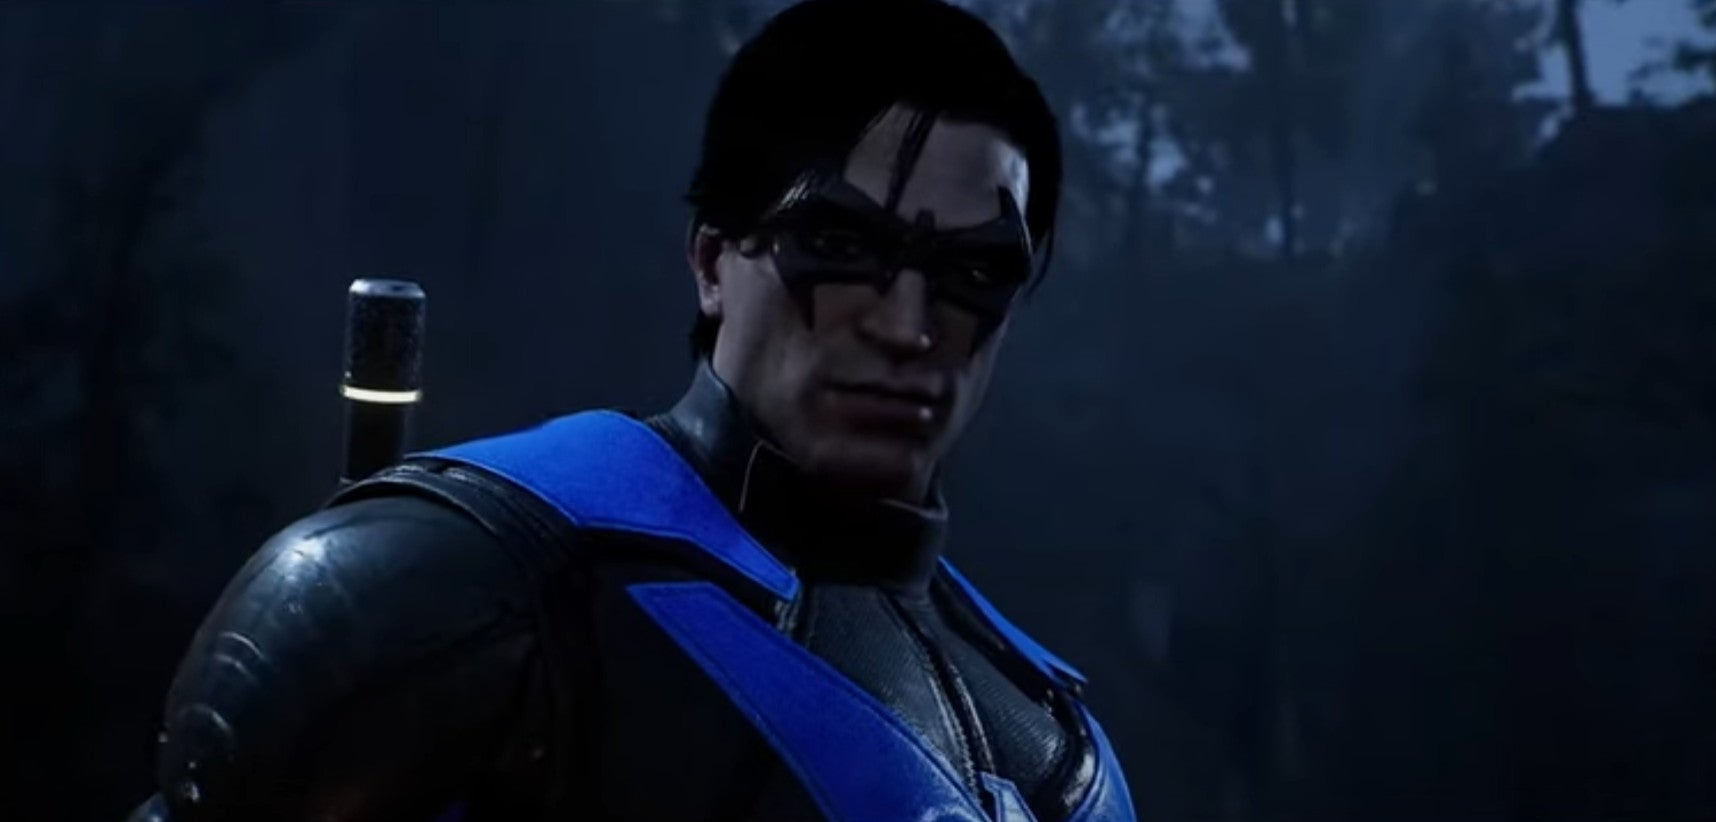 Bilder zu Gotham Knights: Video stellt zum ersten Mal Nightwing ausführlich vor